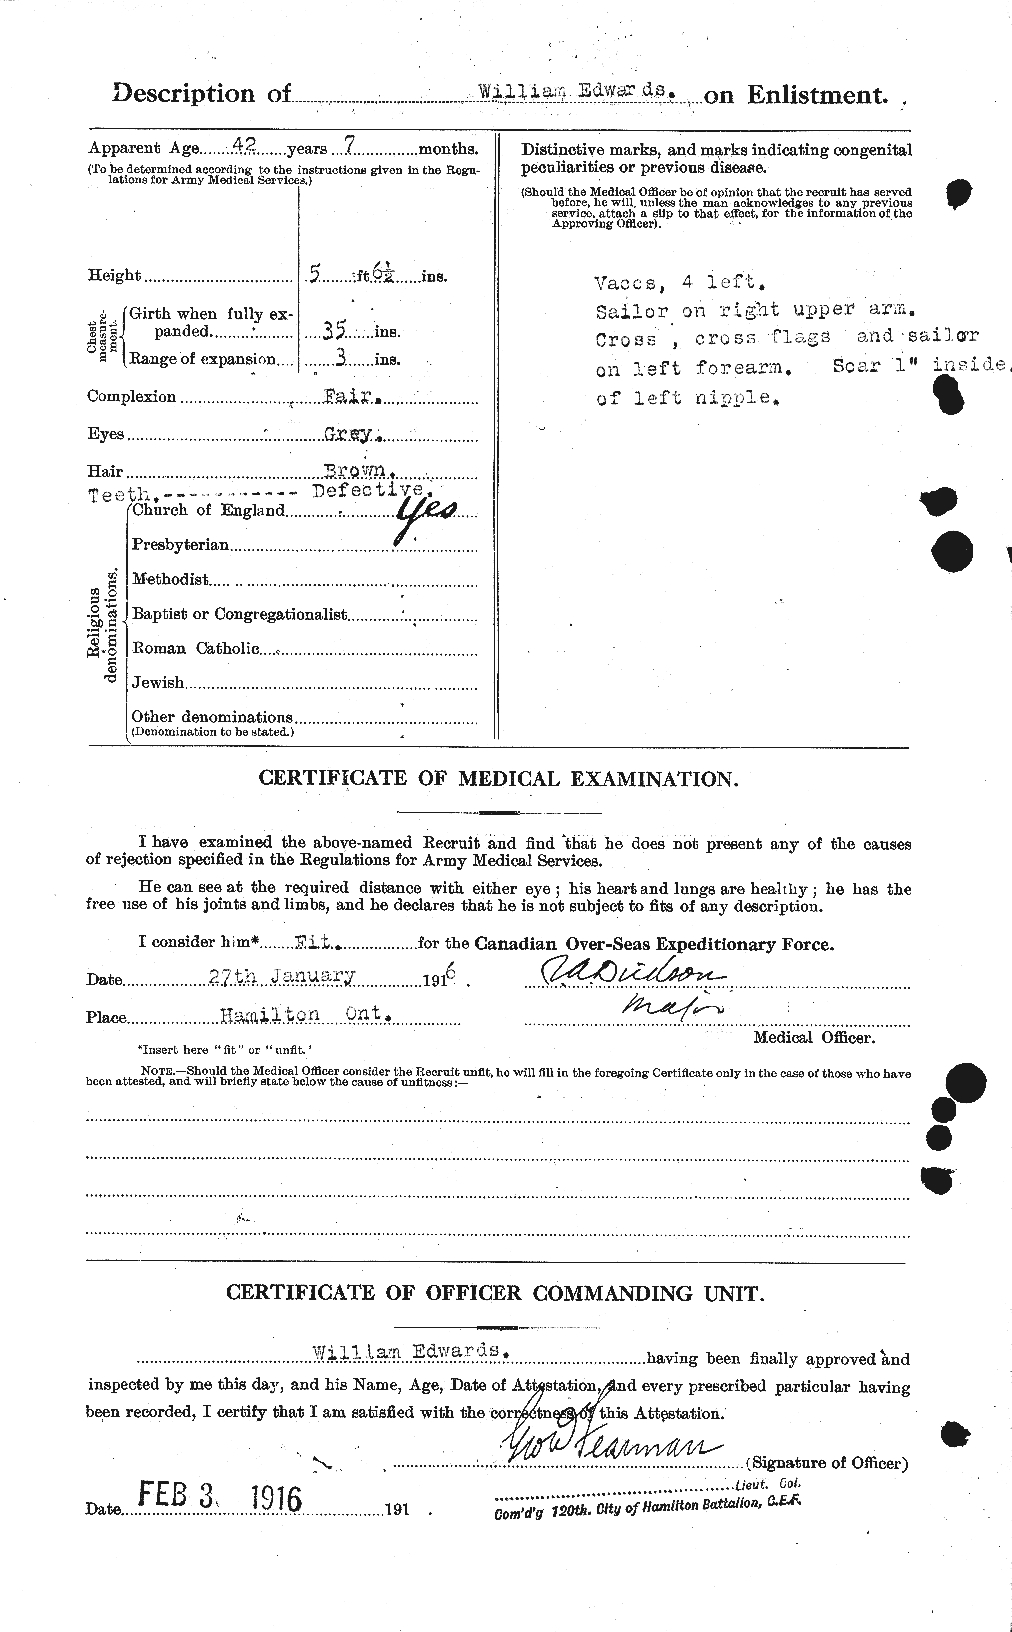 Dossiers du Personnel de la Première Guerre mondiale - CEC 310388b